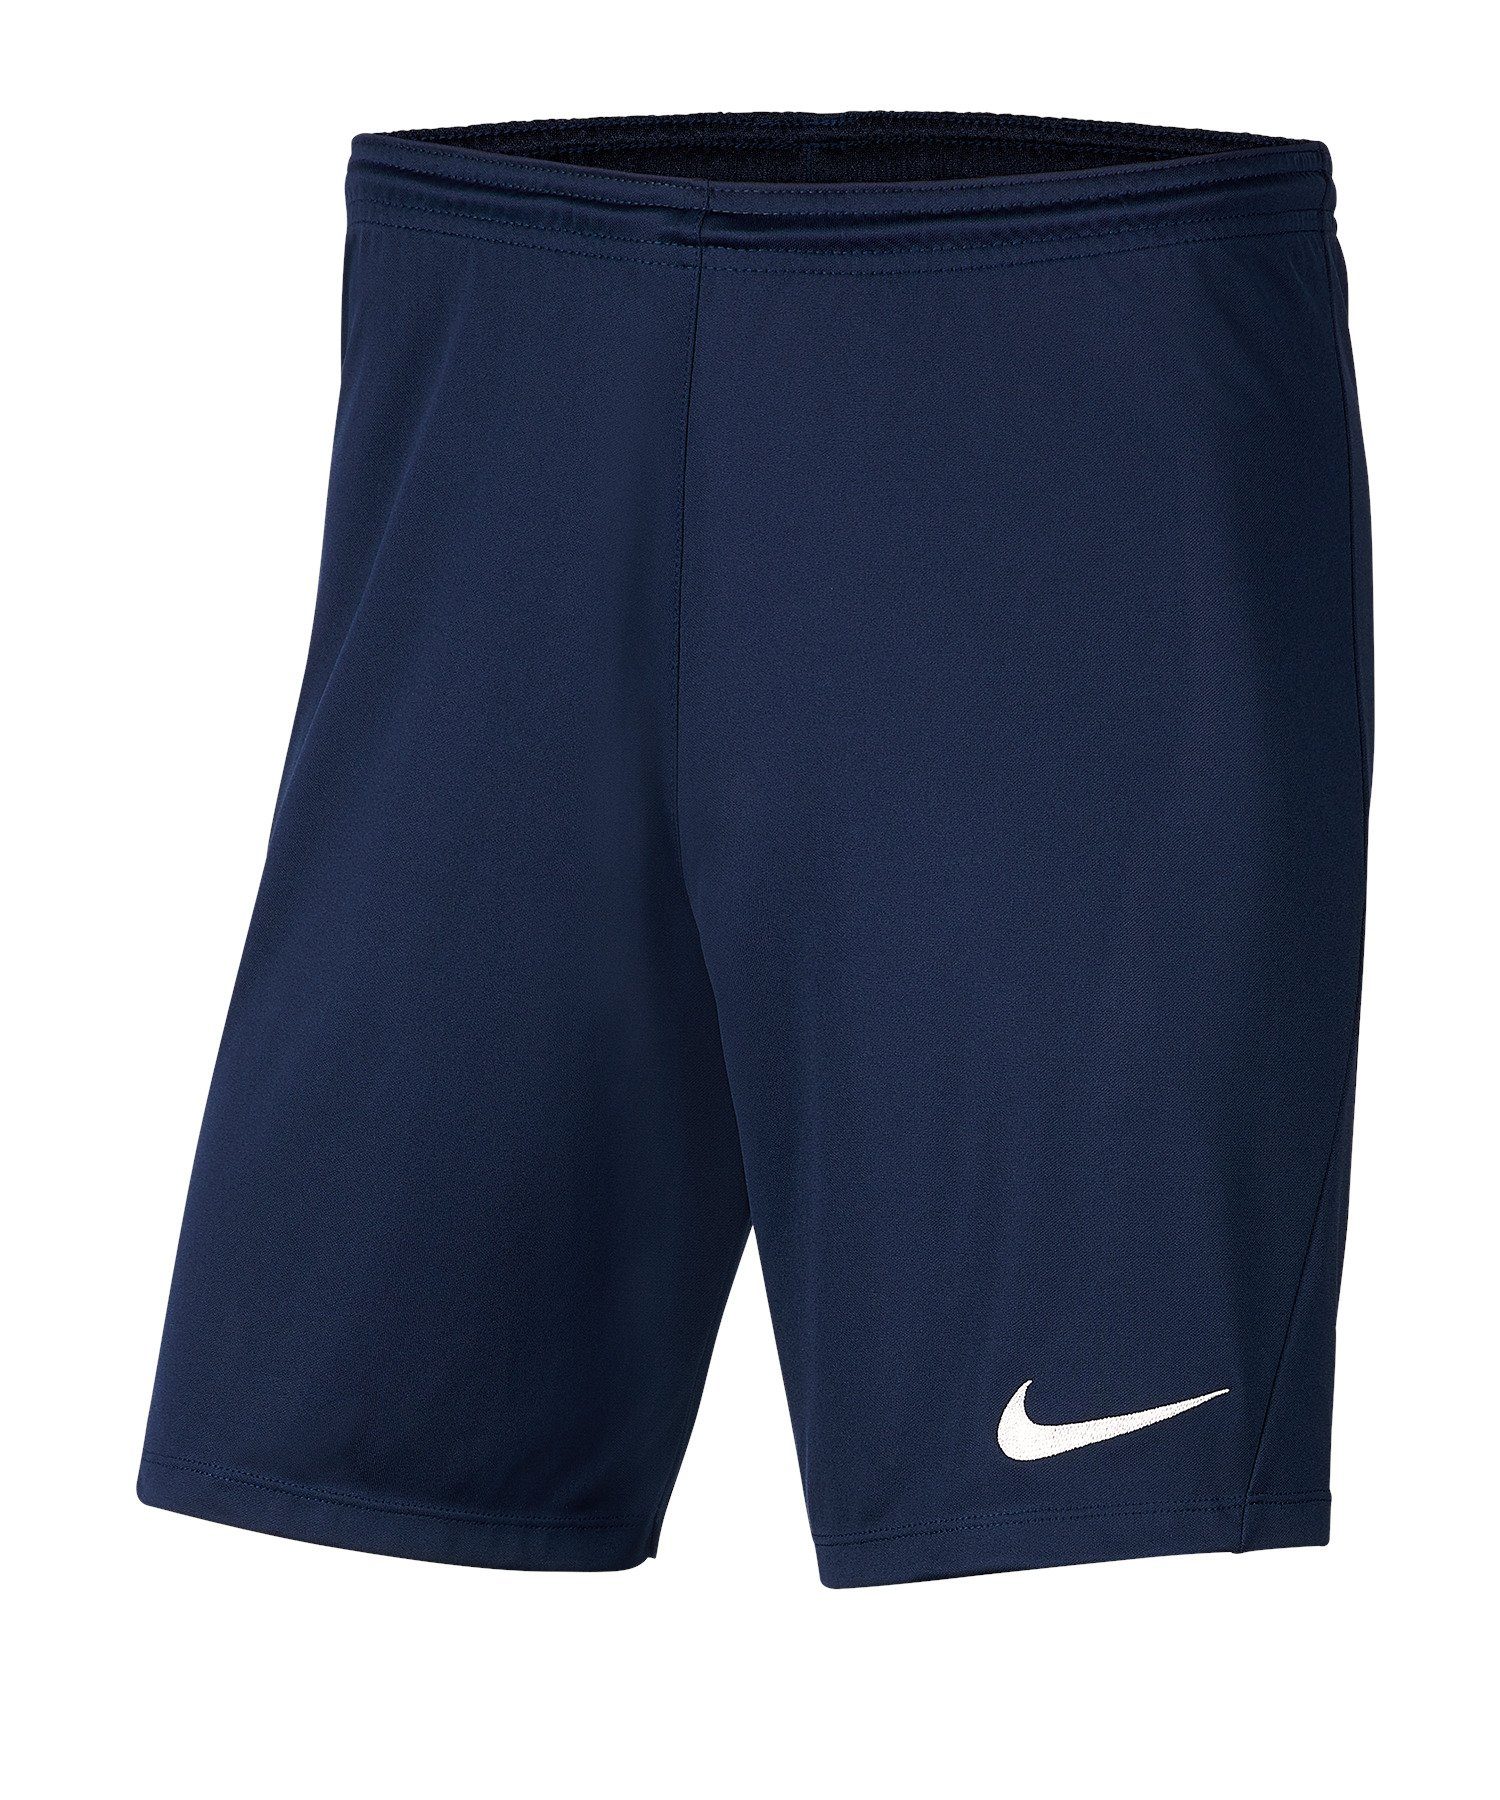 blaublau Short Park III Sporthose Nike